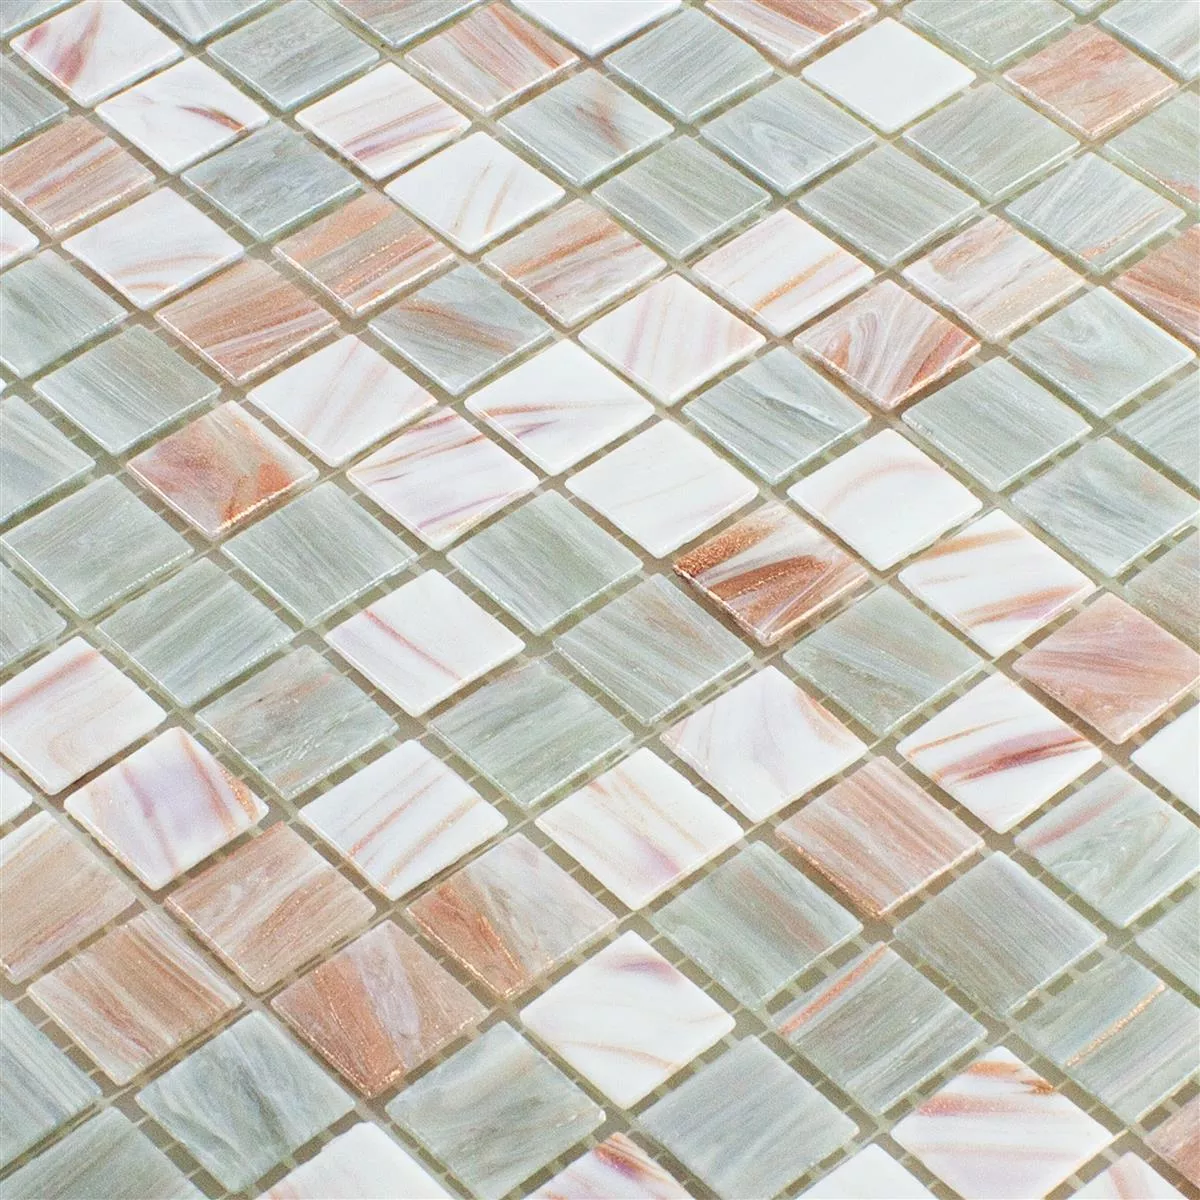 Mosaic Tiles Glass Goldensilk Light Beige